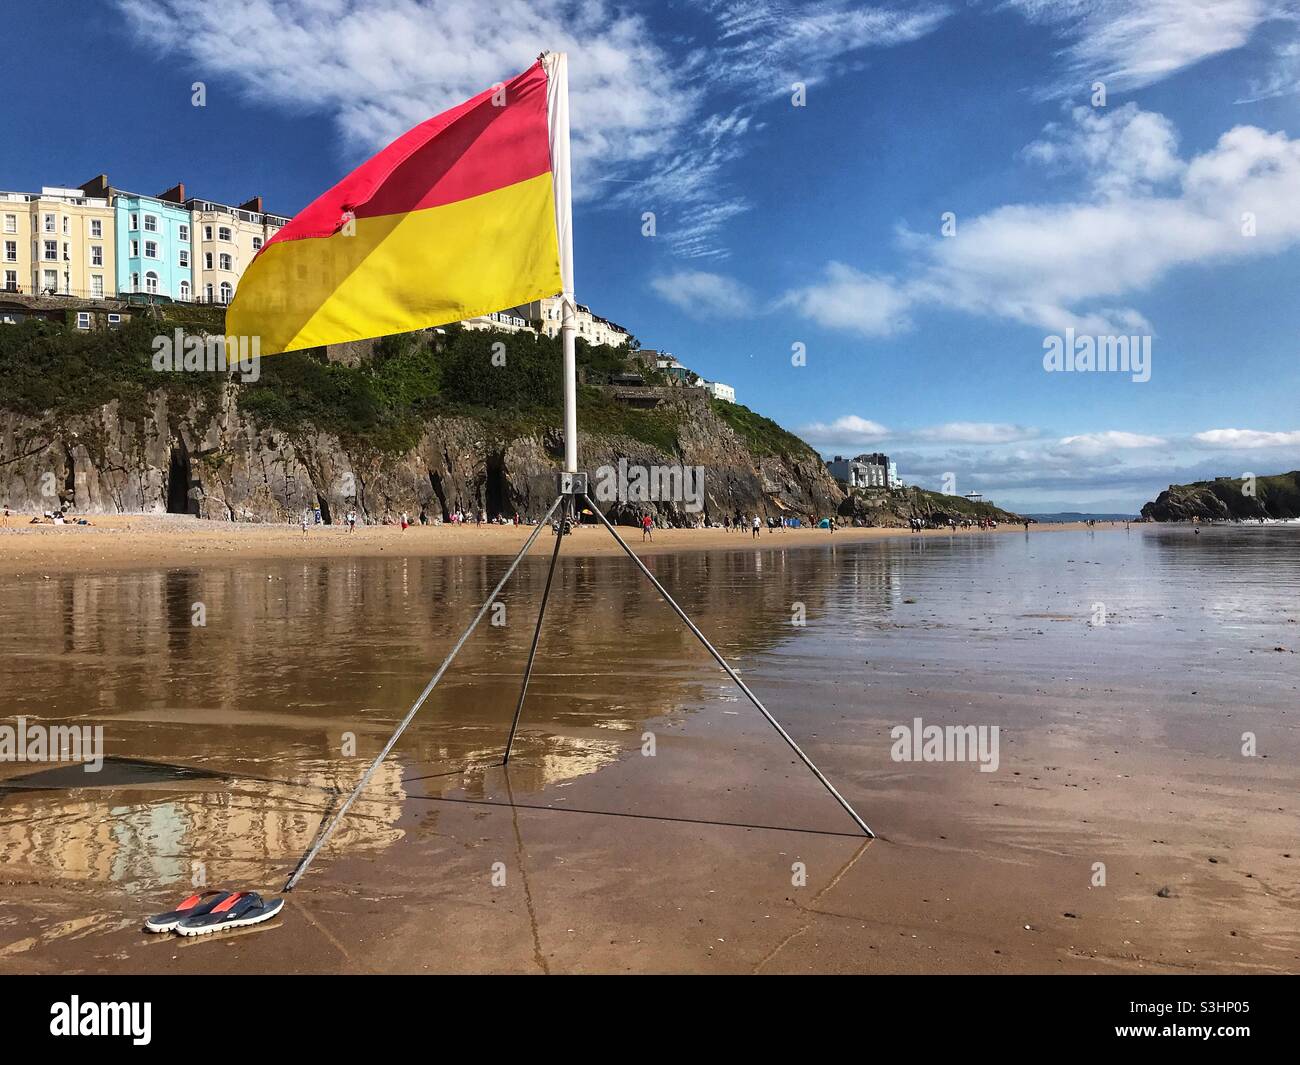 La bandiera rossa sopra gialla indica una zona balneare consigliata che è monitorata da bagnini - Tenby Wales Foto Stock